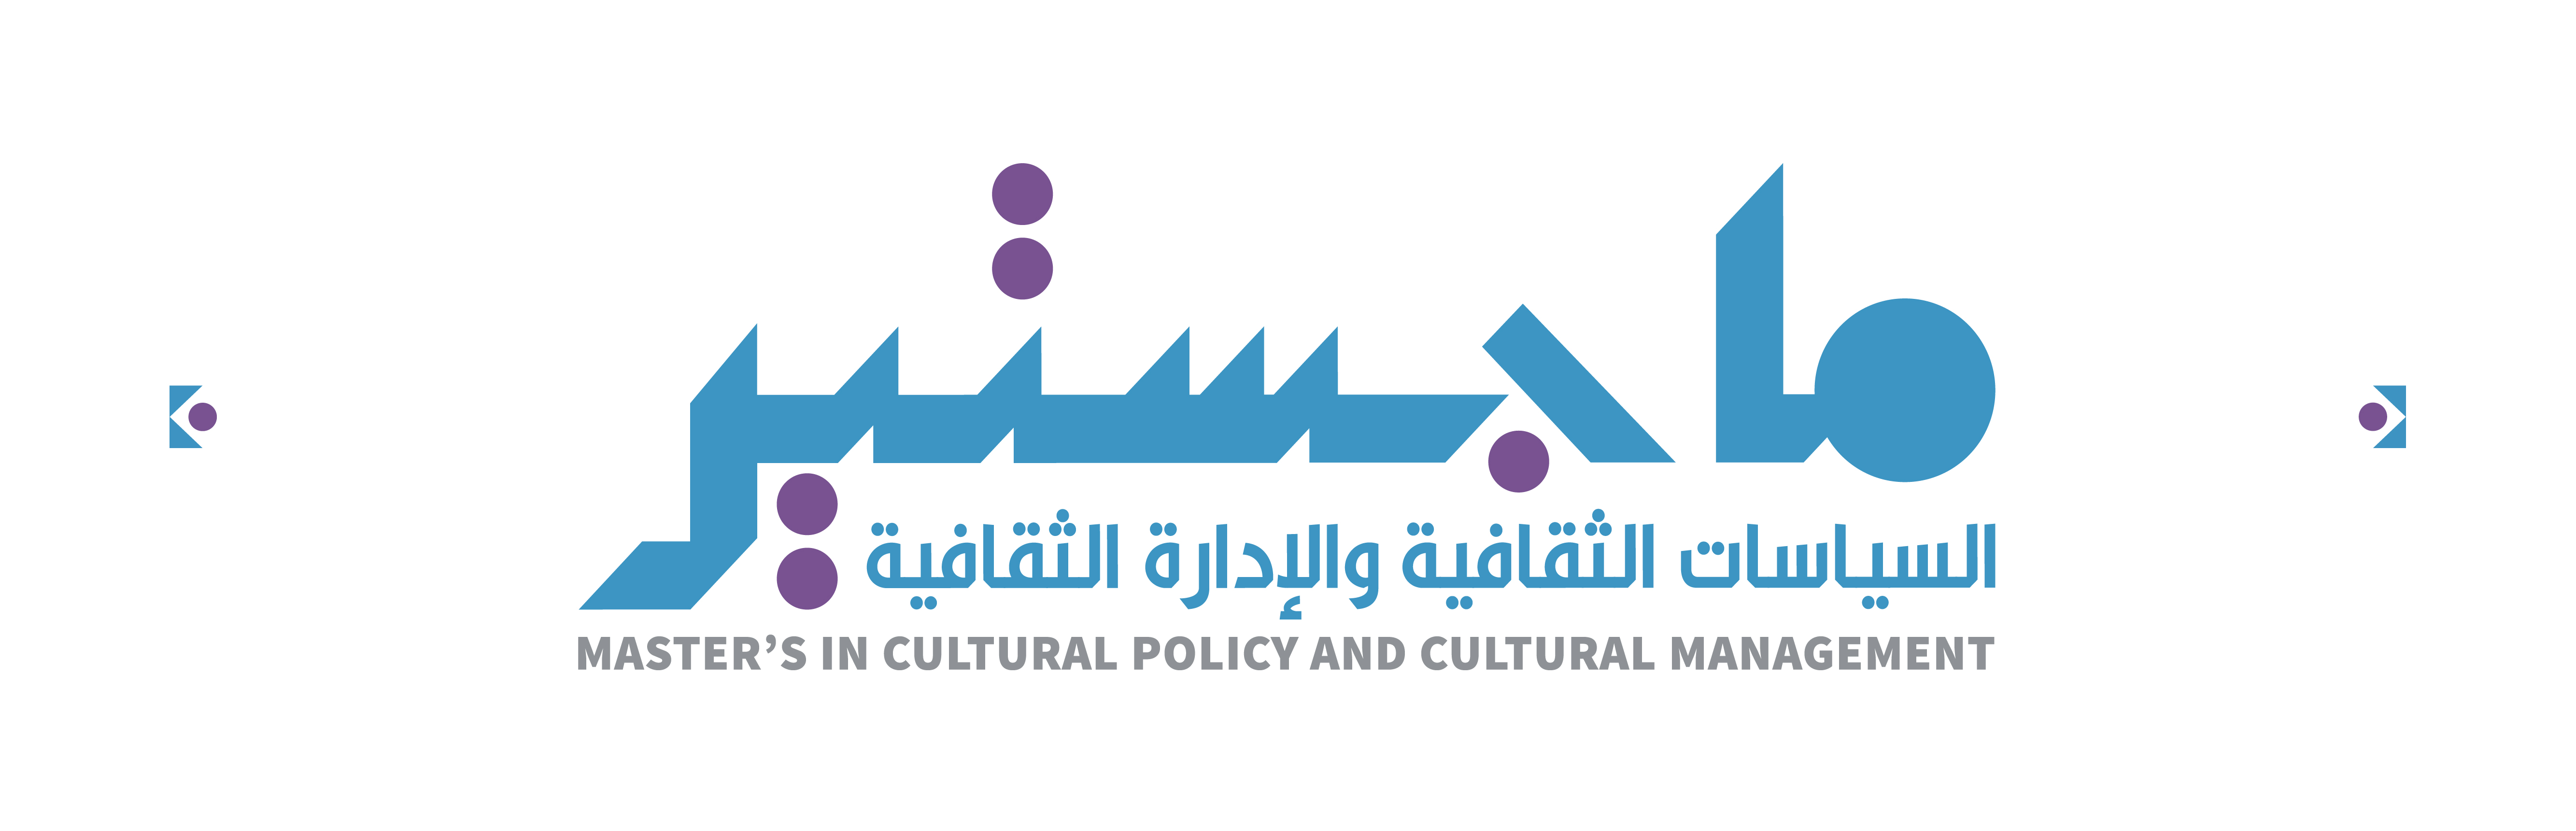 إطلاق ماجستير “السياسات الثقافية والإدارة الثقافية” في المغرب Culture